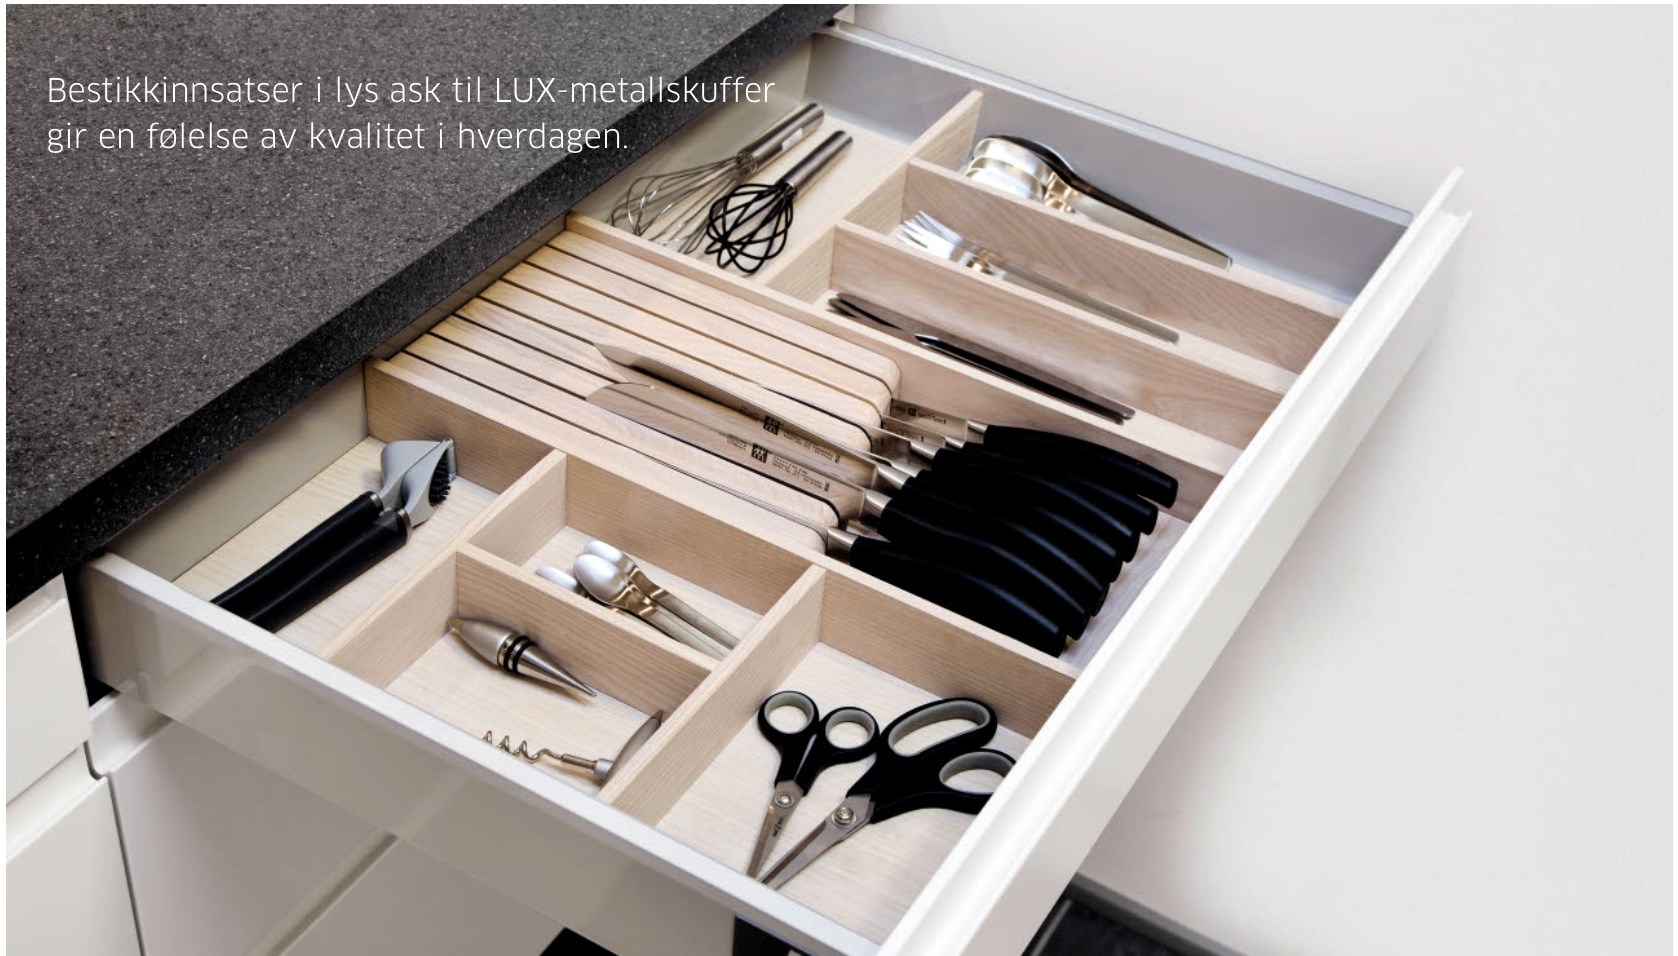 IKEA skapinnredning i HTH skuffer? - lux-innlegg.jpeg - mokka